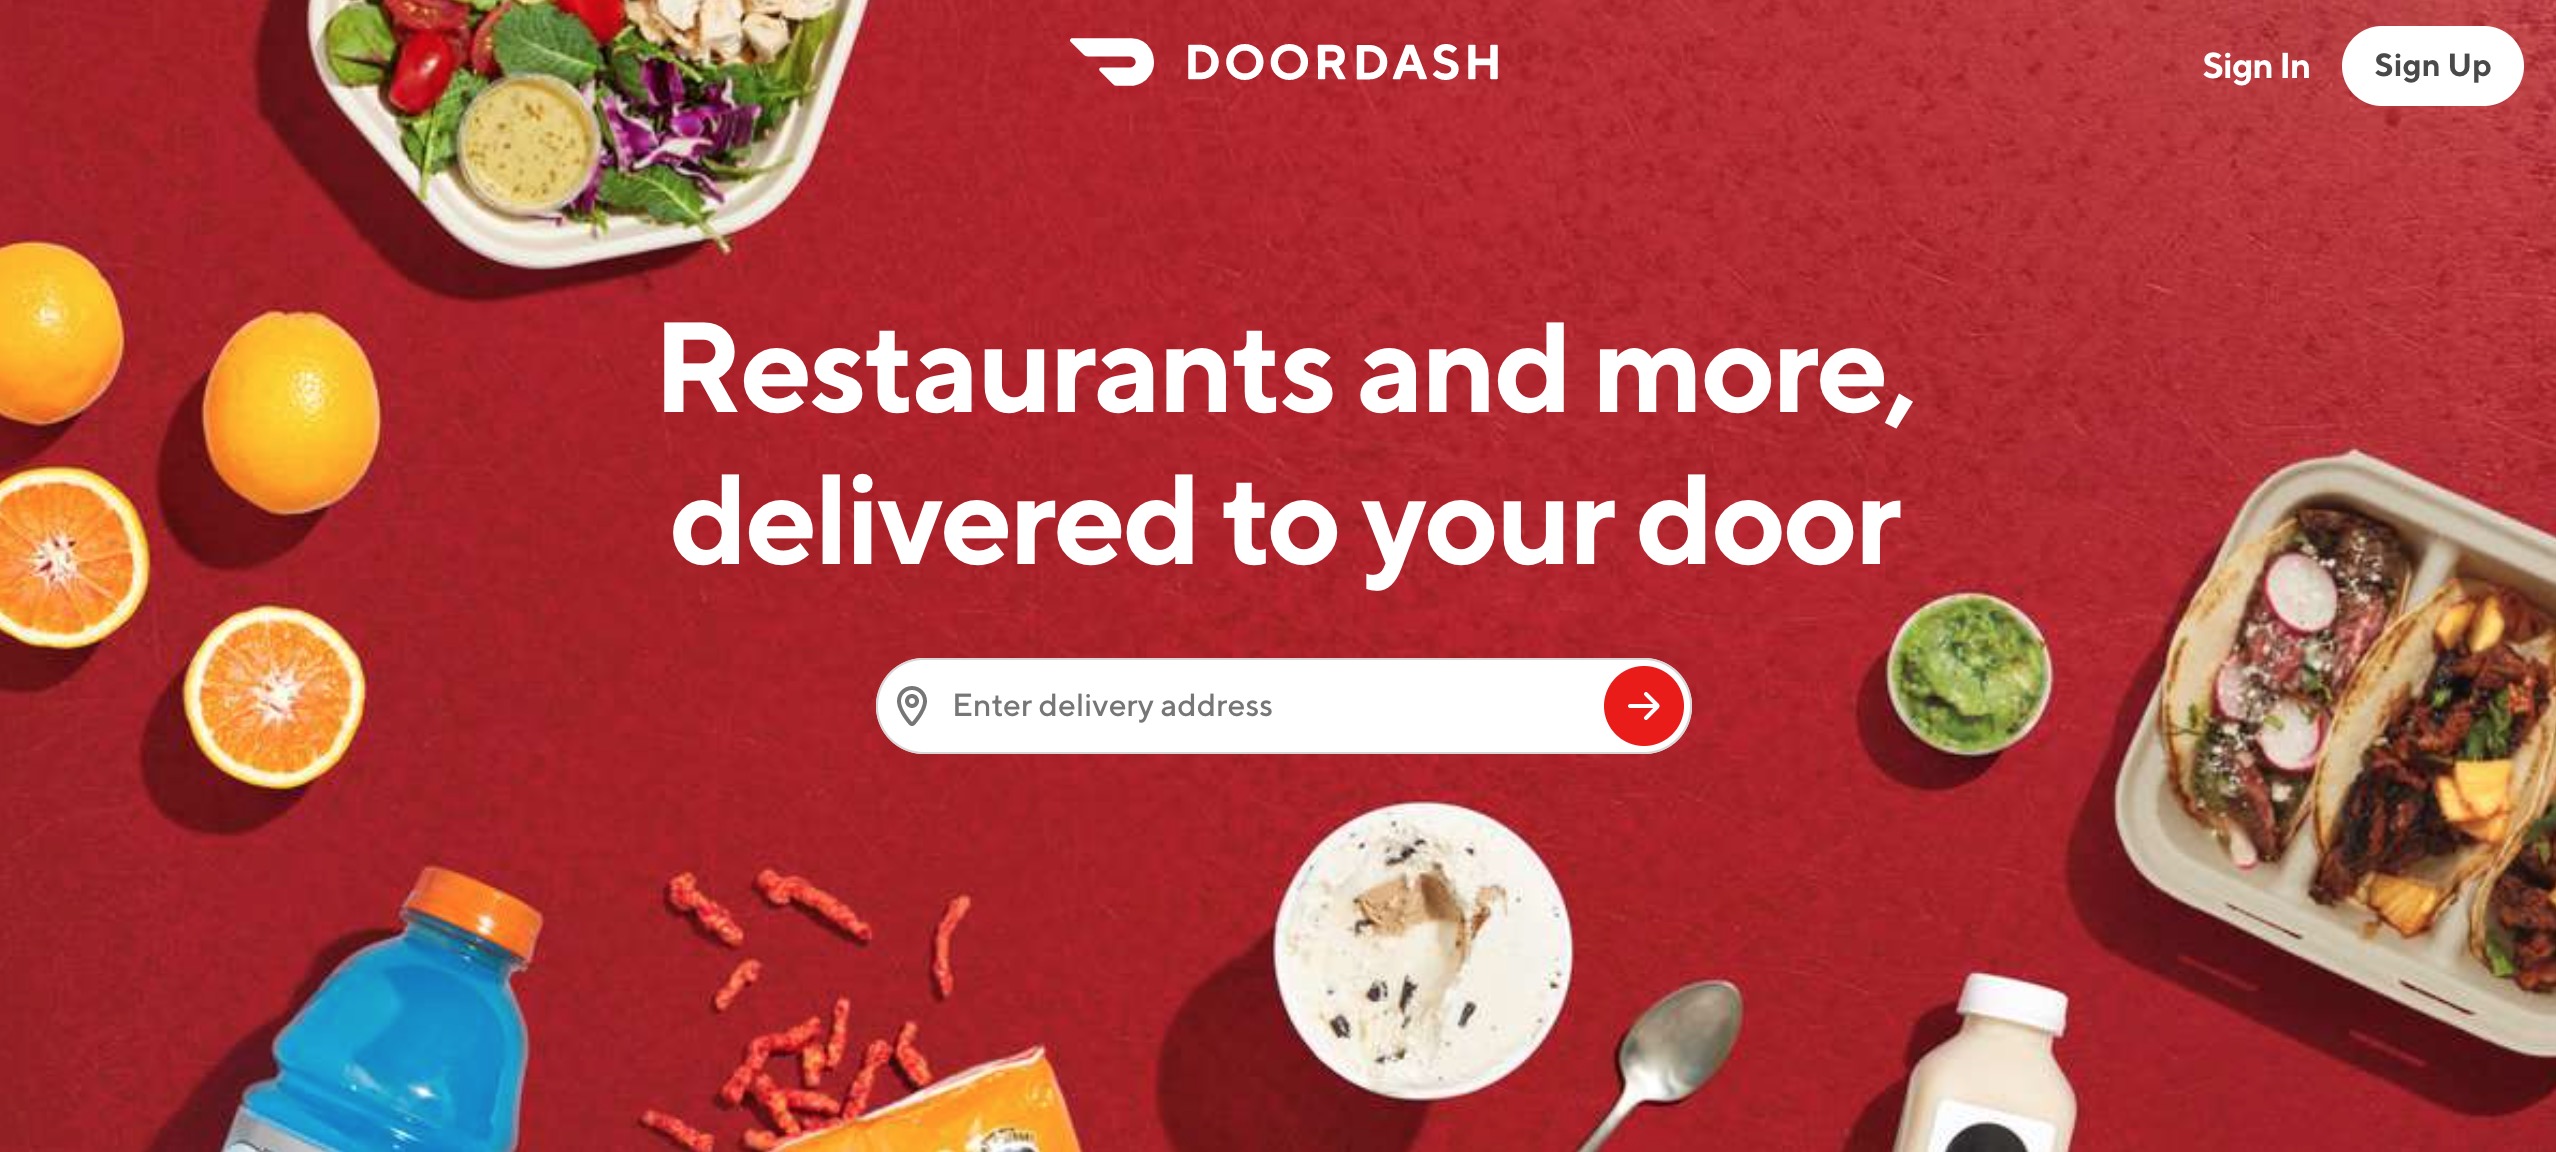 DoorDash main page